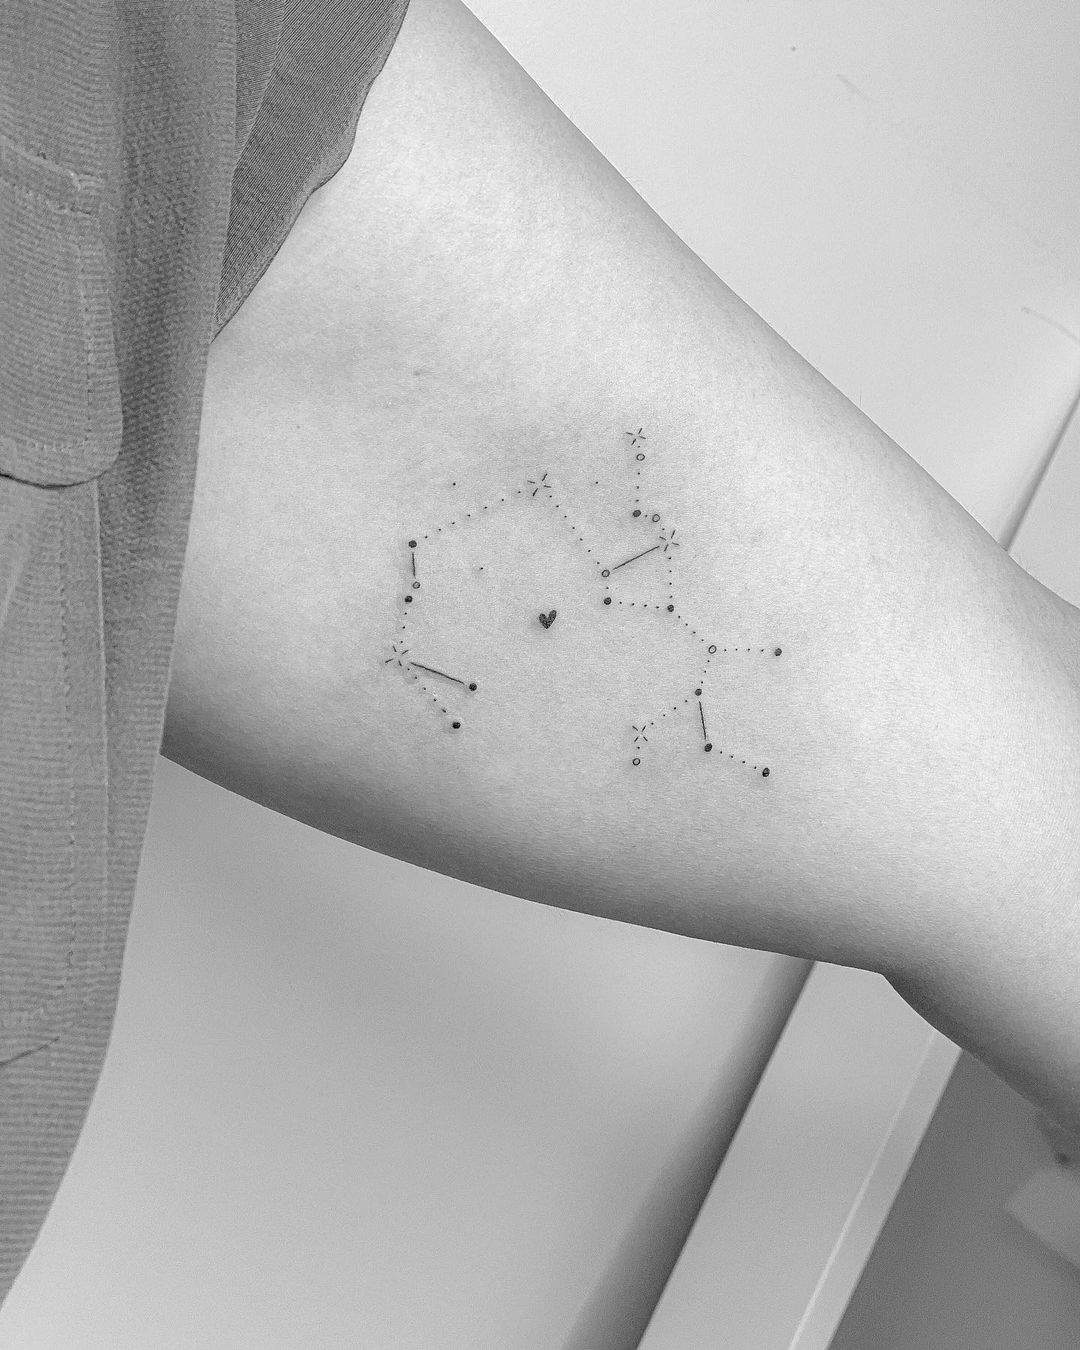 Tatuaje de constelación con trazos, puntos y corazón